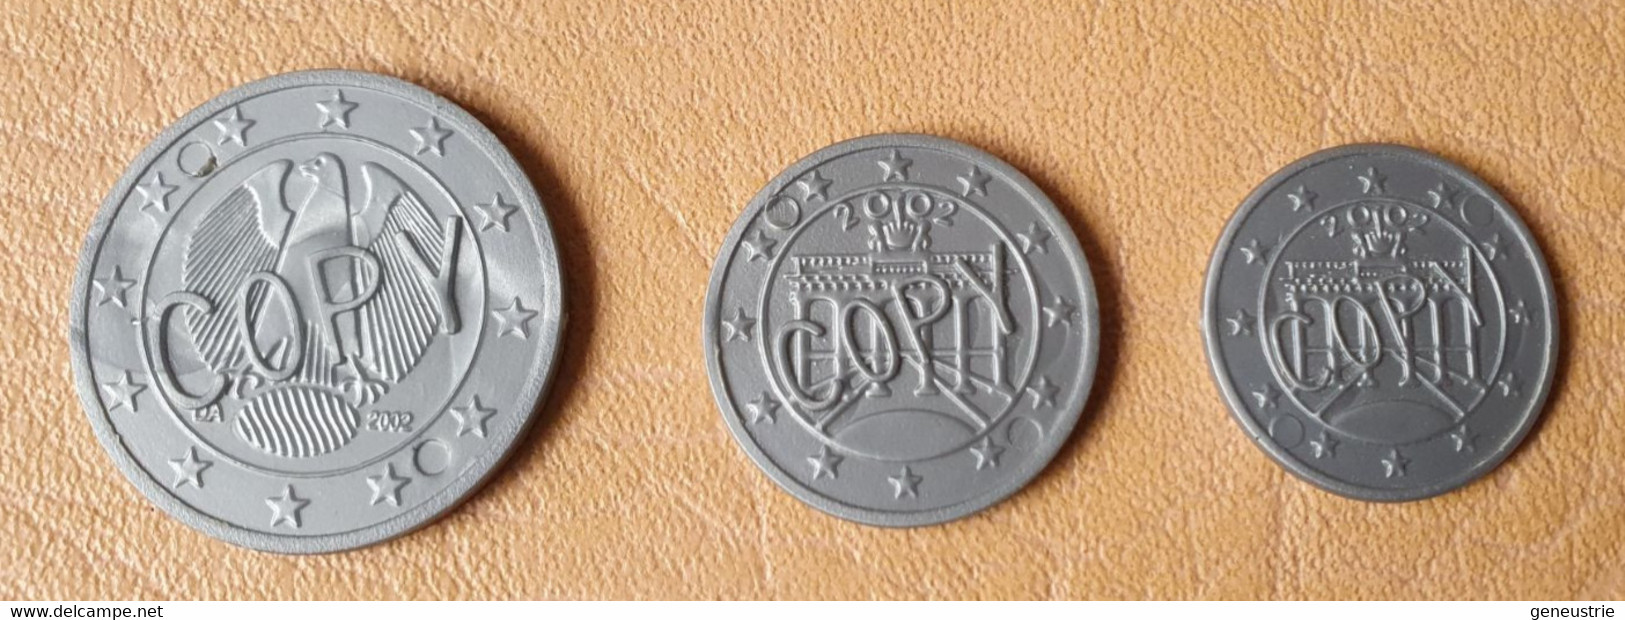 Lot De 3 Monnaies Plastique D'école En Euro "Copy" Allemagne - School Coins - Professionnels/De Société